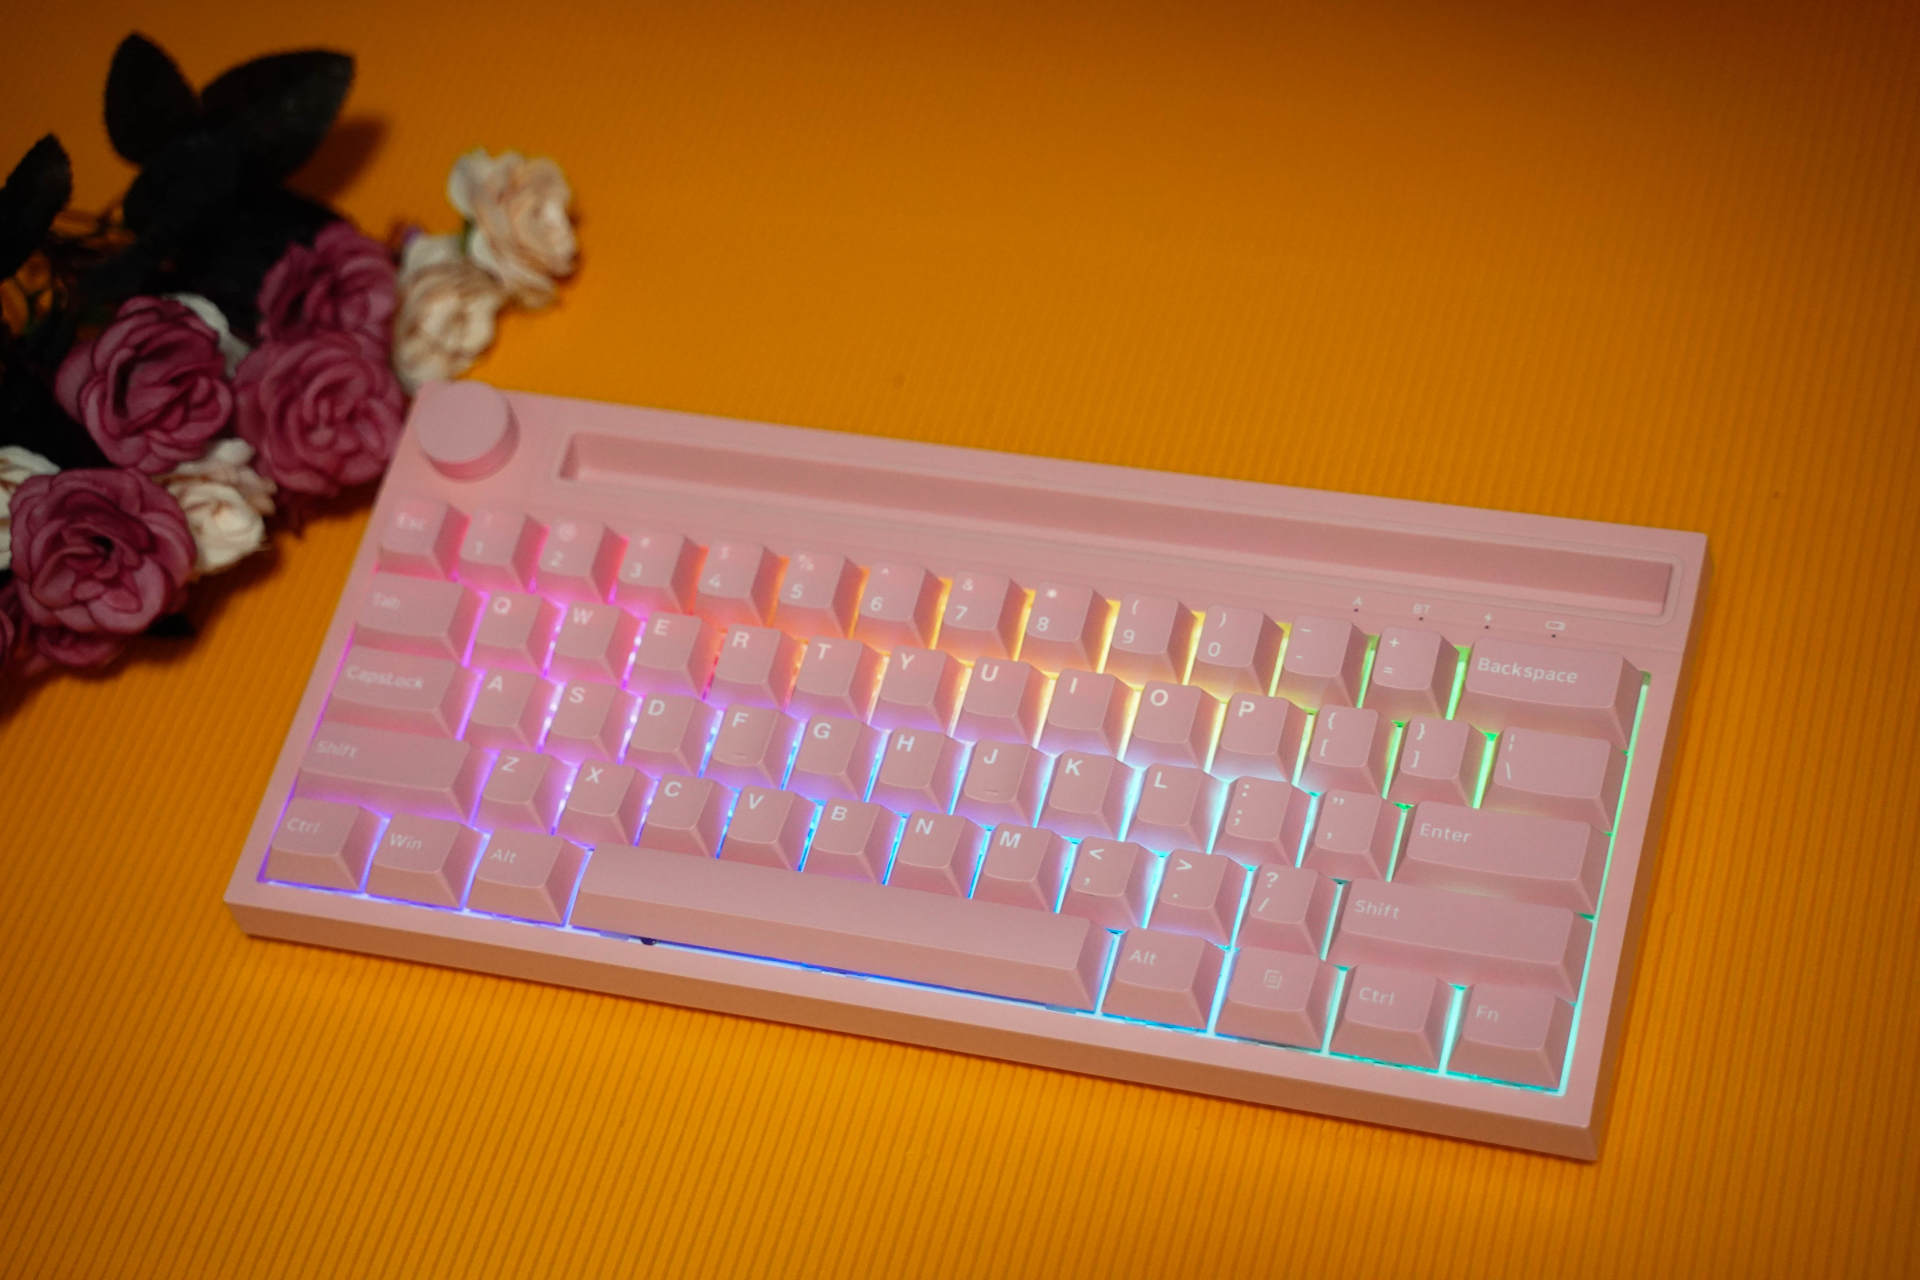 每个女生都有公主梦，送老婆个粉色黑爵K620T双模机械键盘做礼物